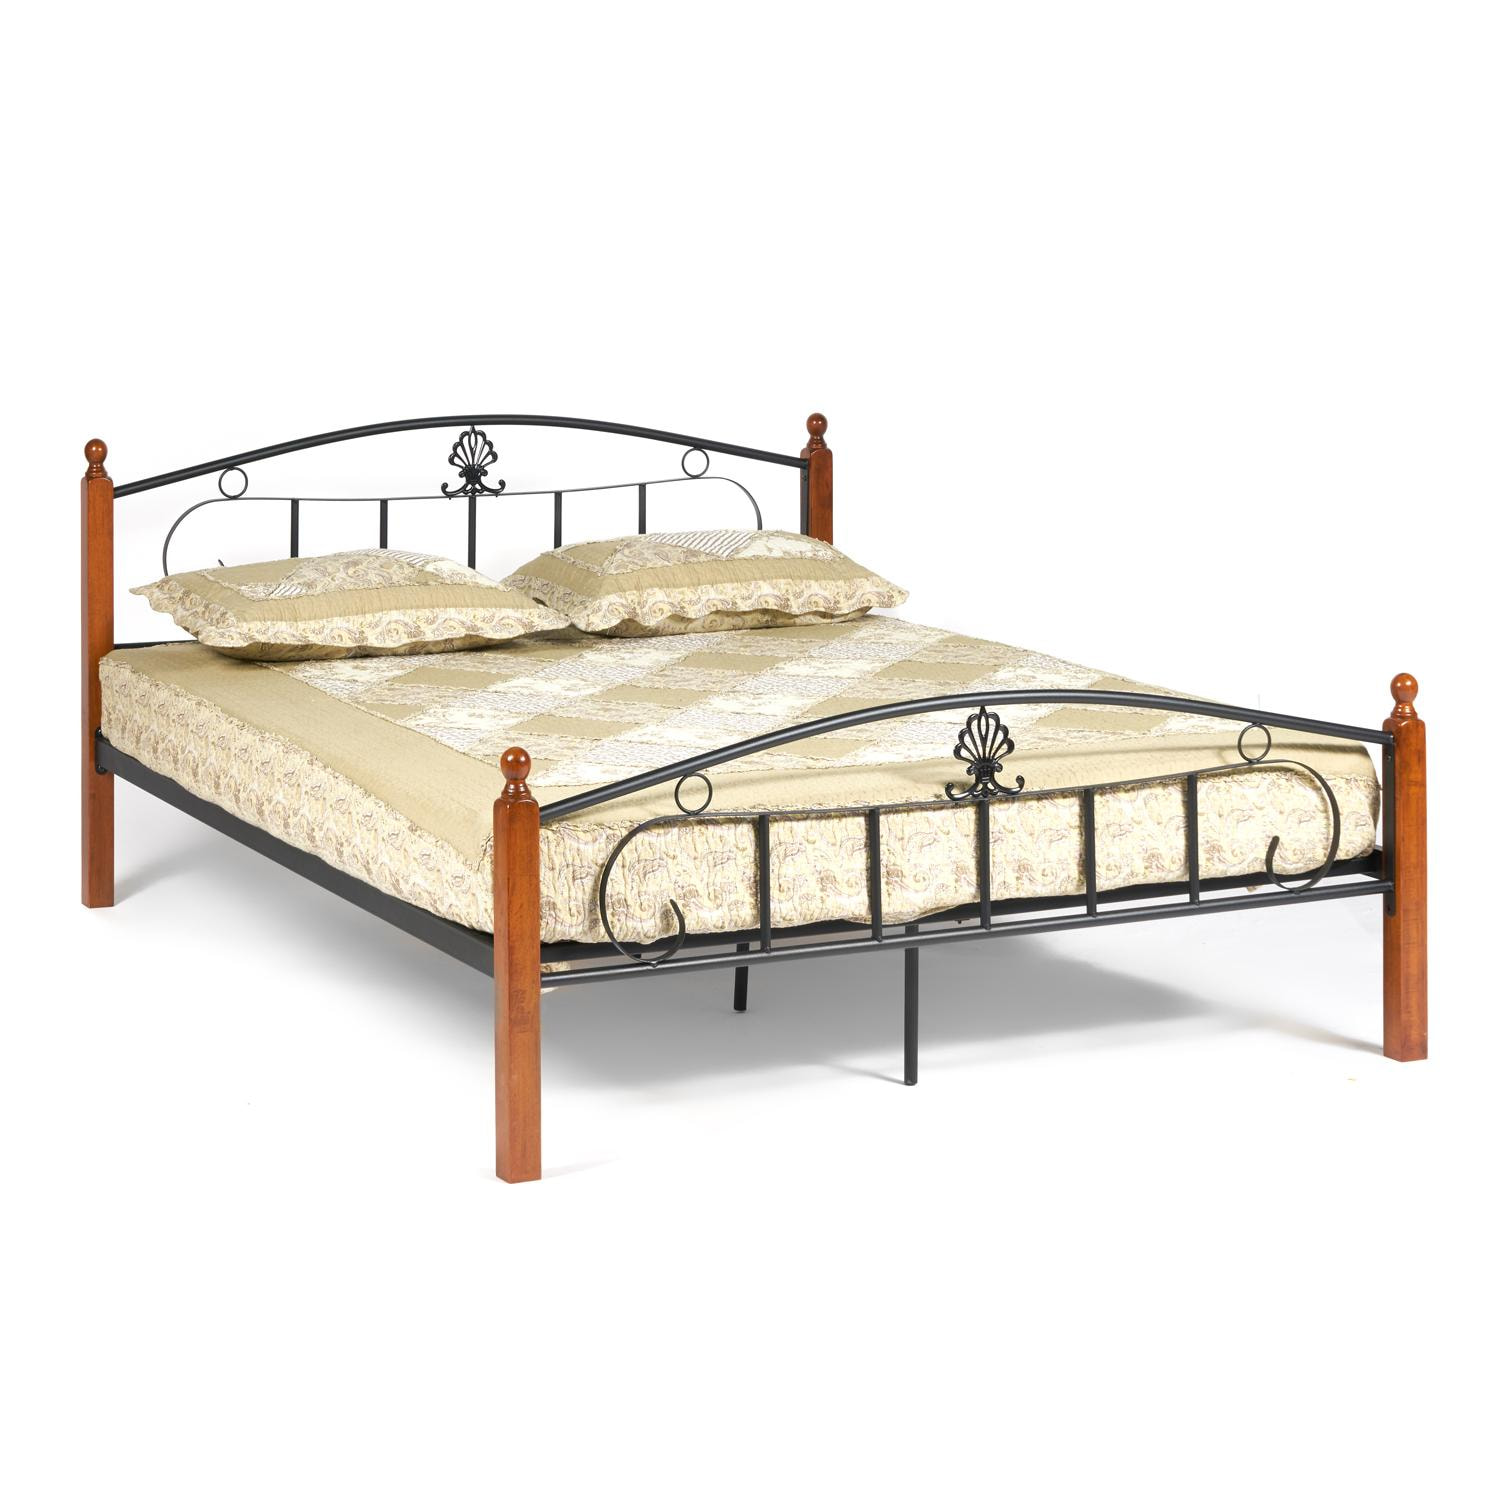 Кровать РУМБА (AT-203)/ RUMBA Wood slat base дерево гевея/металл, 160*200 см (Queen bed), красный дуб/черный